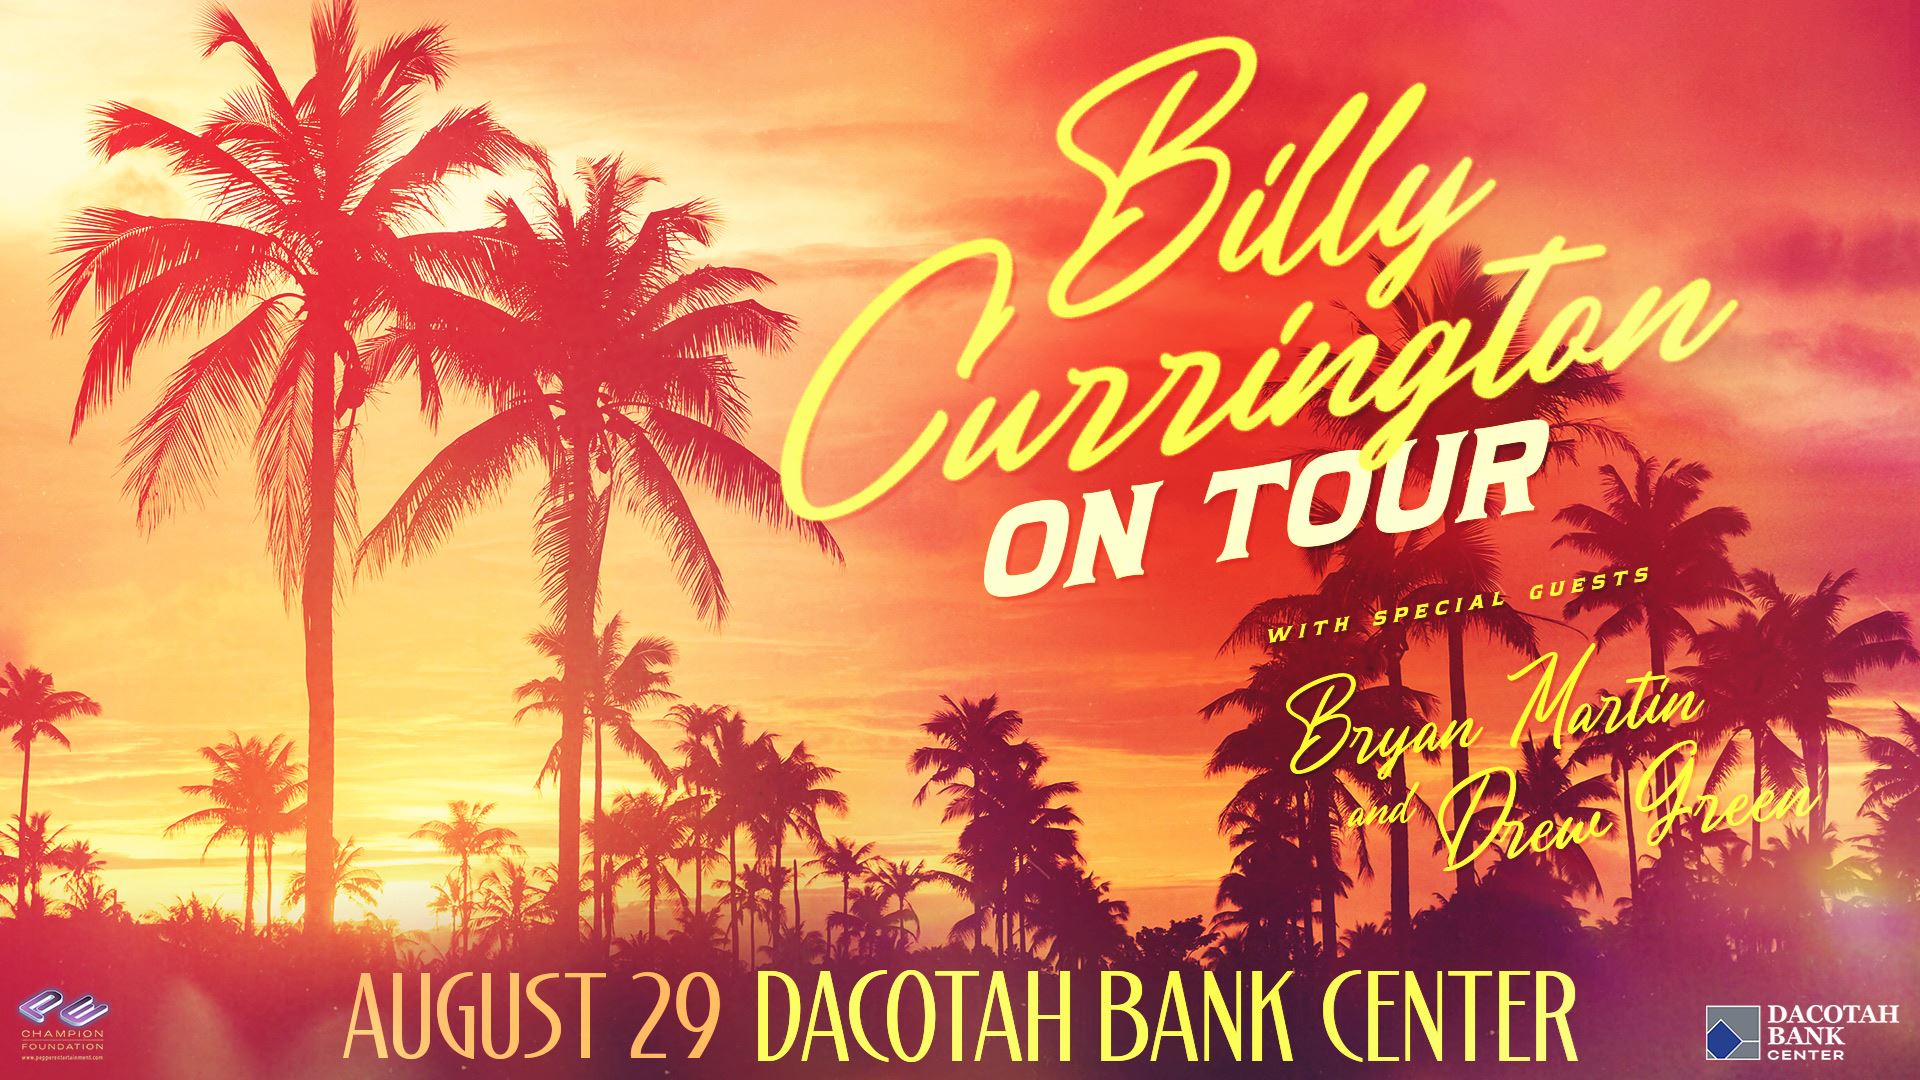 Billy Currington On Tour